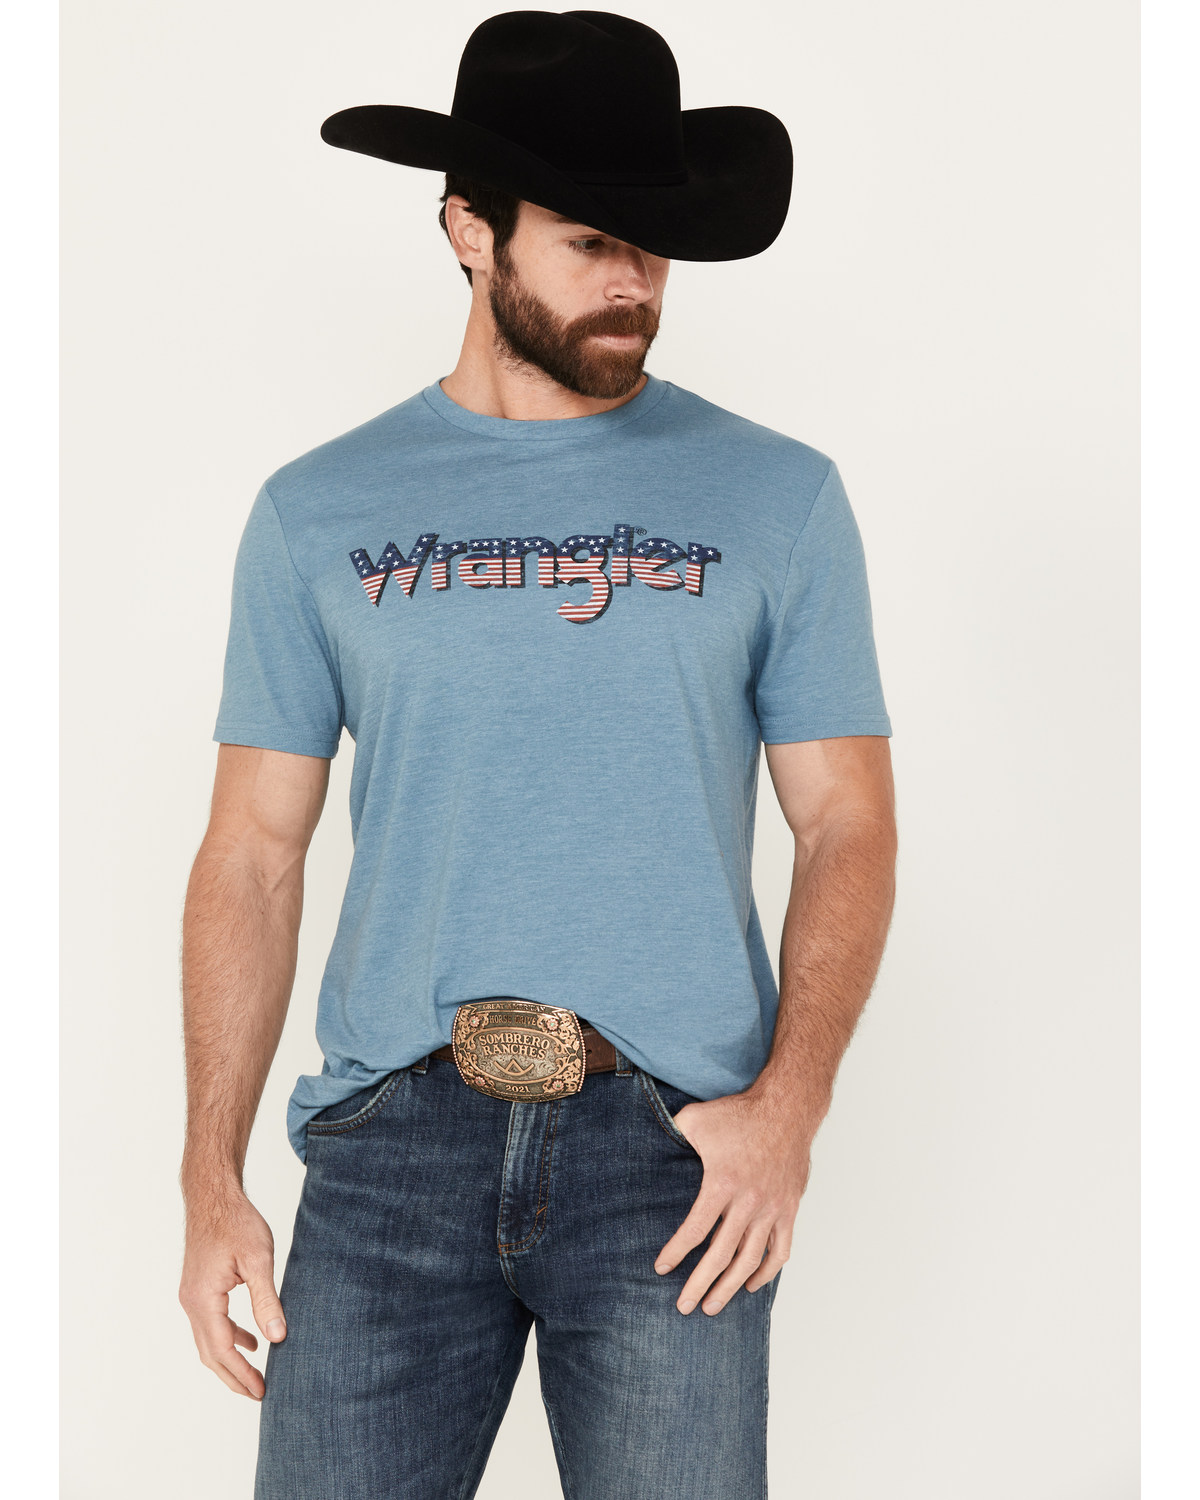 Wrangler Men's American Logo Short Sleeve Graphic T-Shirt